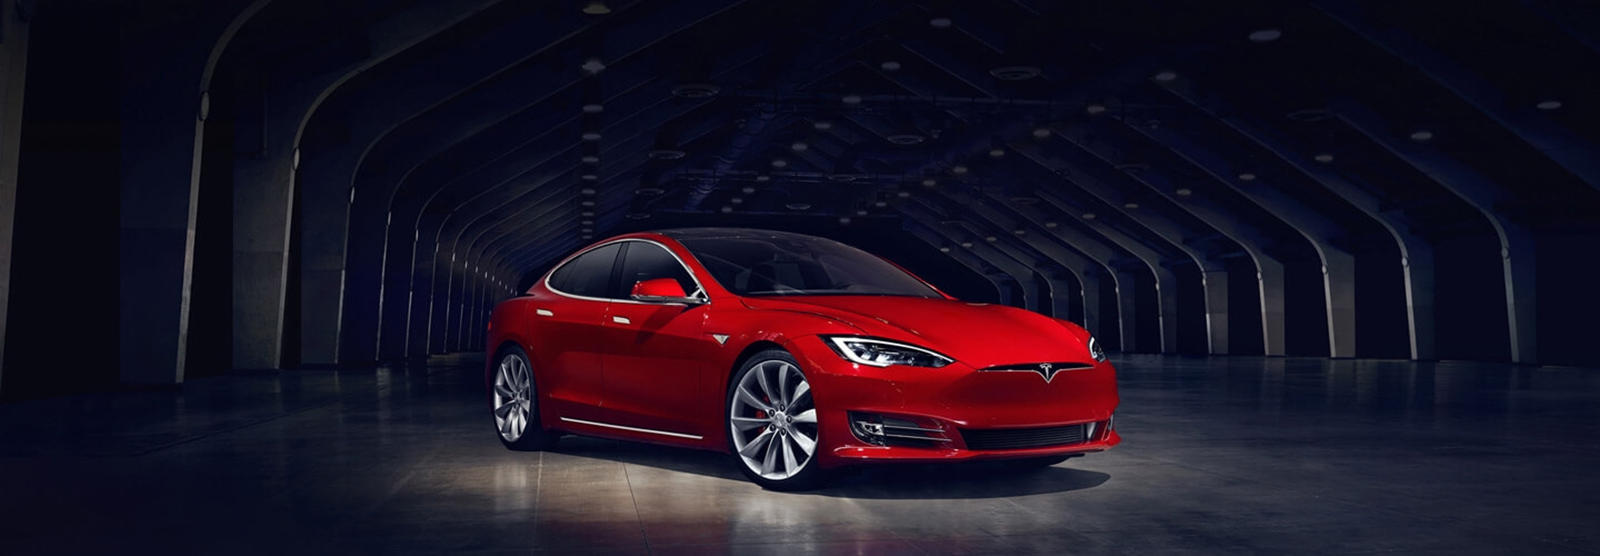 Сеть Tesla V3 Supercharger уже впечатляет, но всегда есть возможности для улучшения. В соответствии с примечаниями, сопровождающими обновление программного обеспечения, автомобили Model S и Model X теперь смогут заряжаться до пиковой мощности до 225 